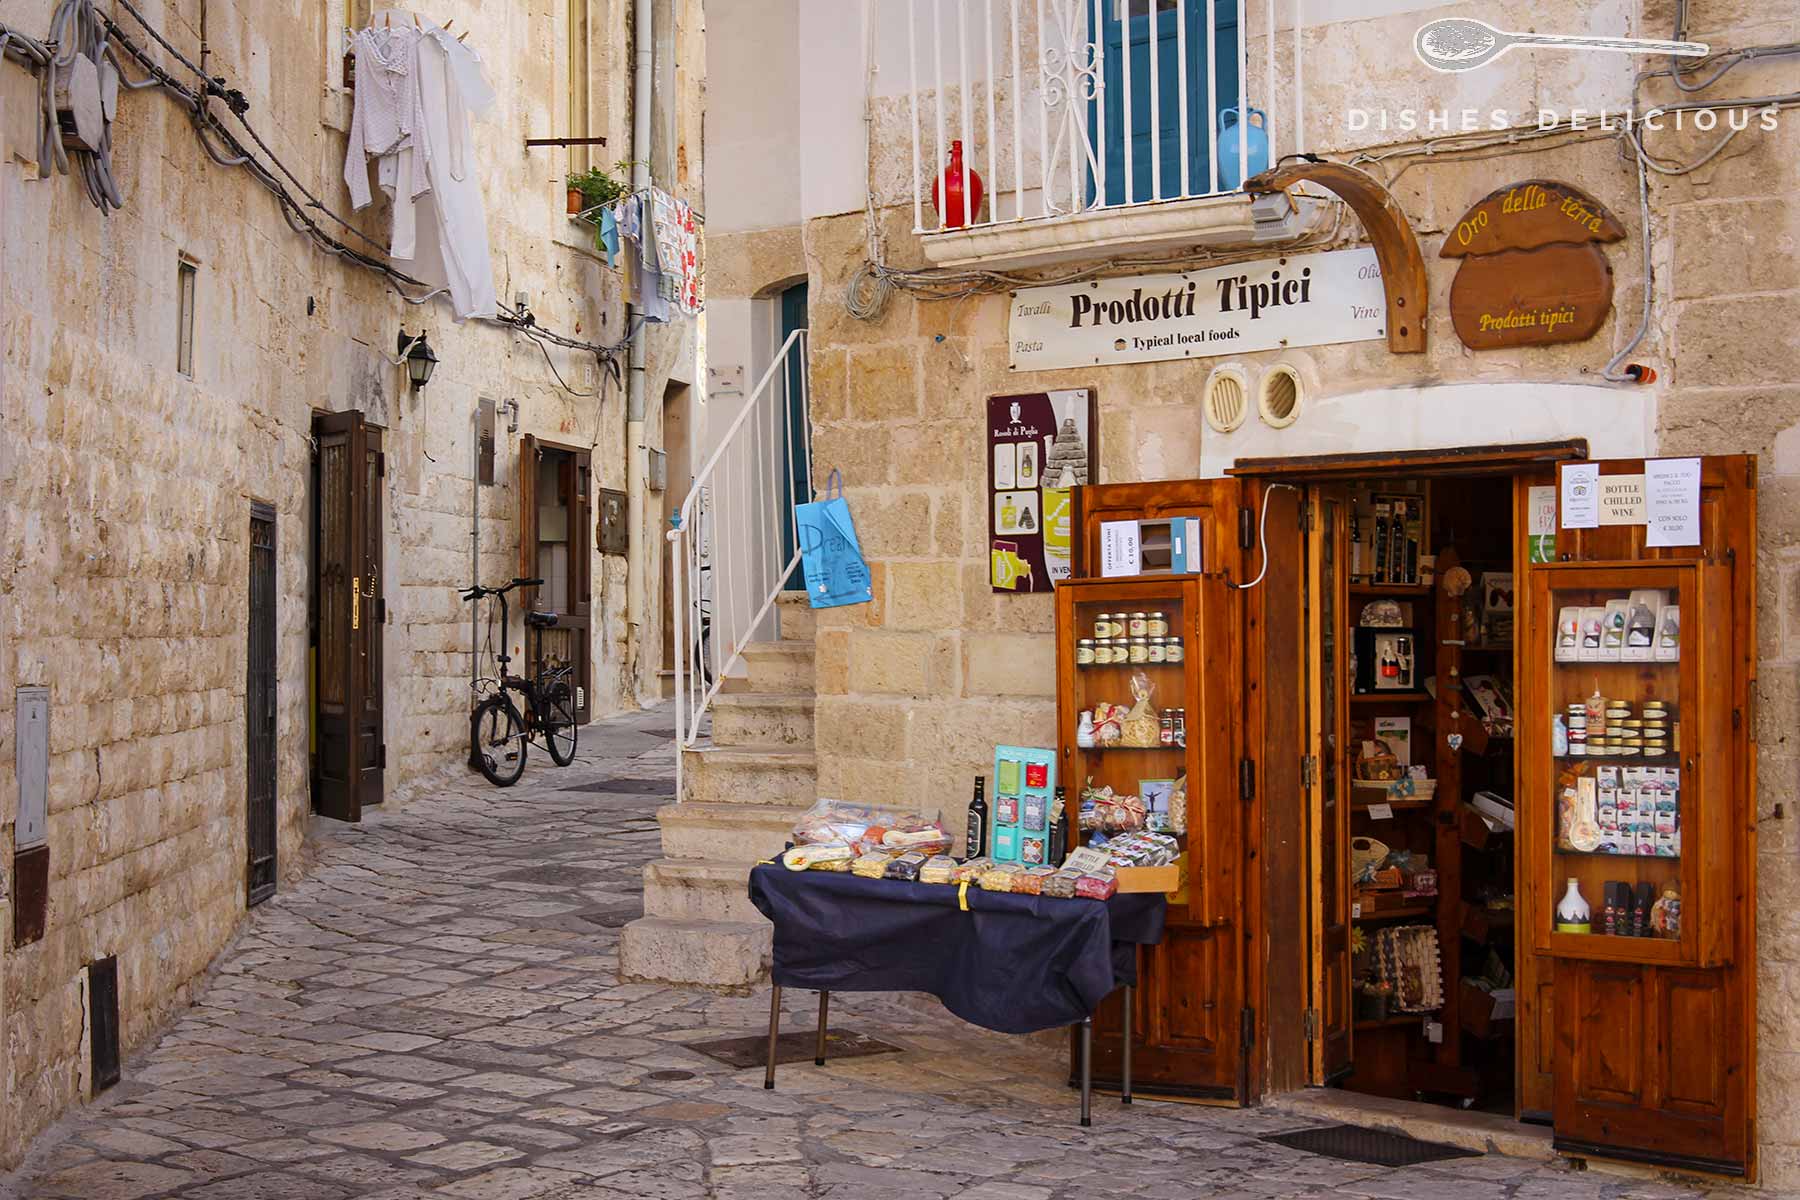 Ein kleiner Spezialitäten-Laden in der Altstadt von Polignano.